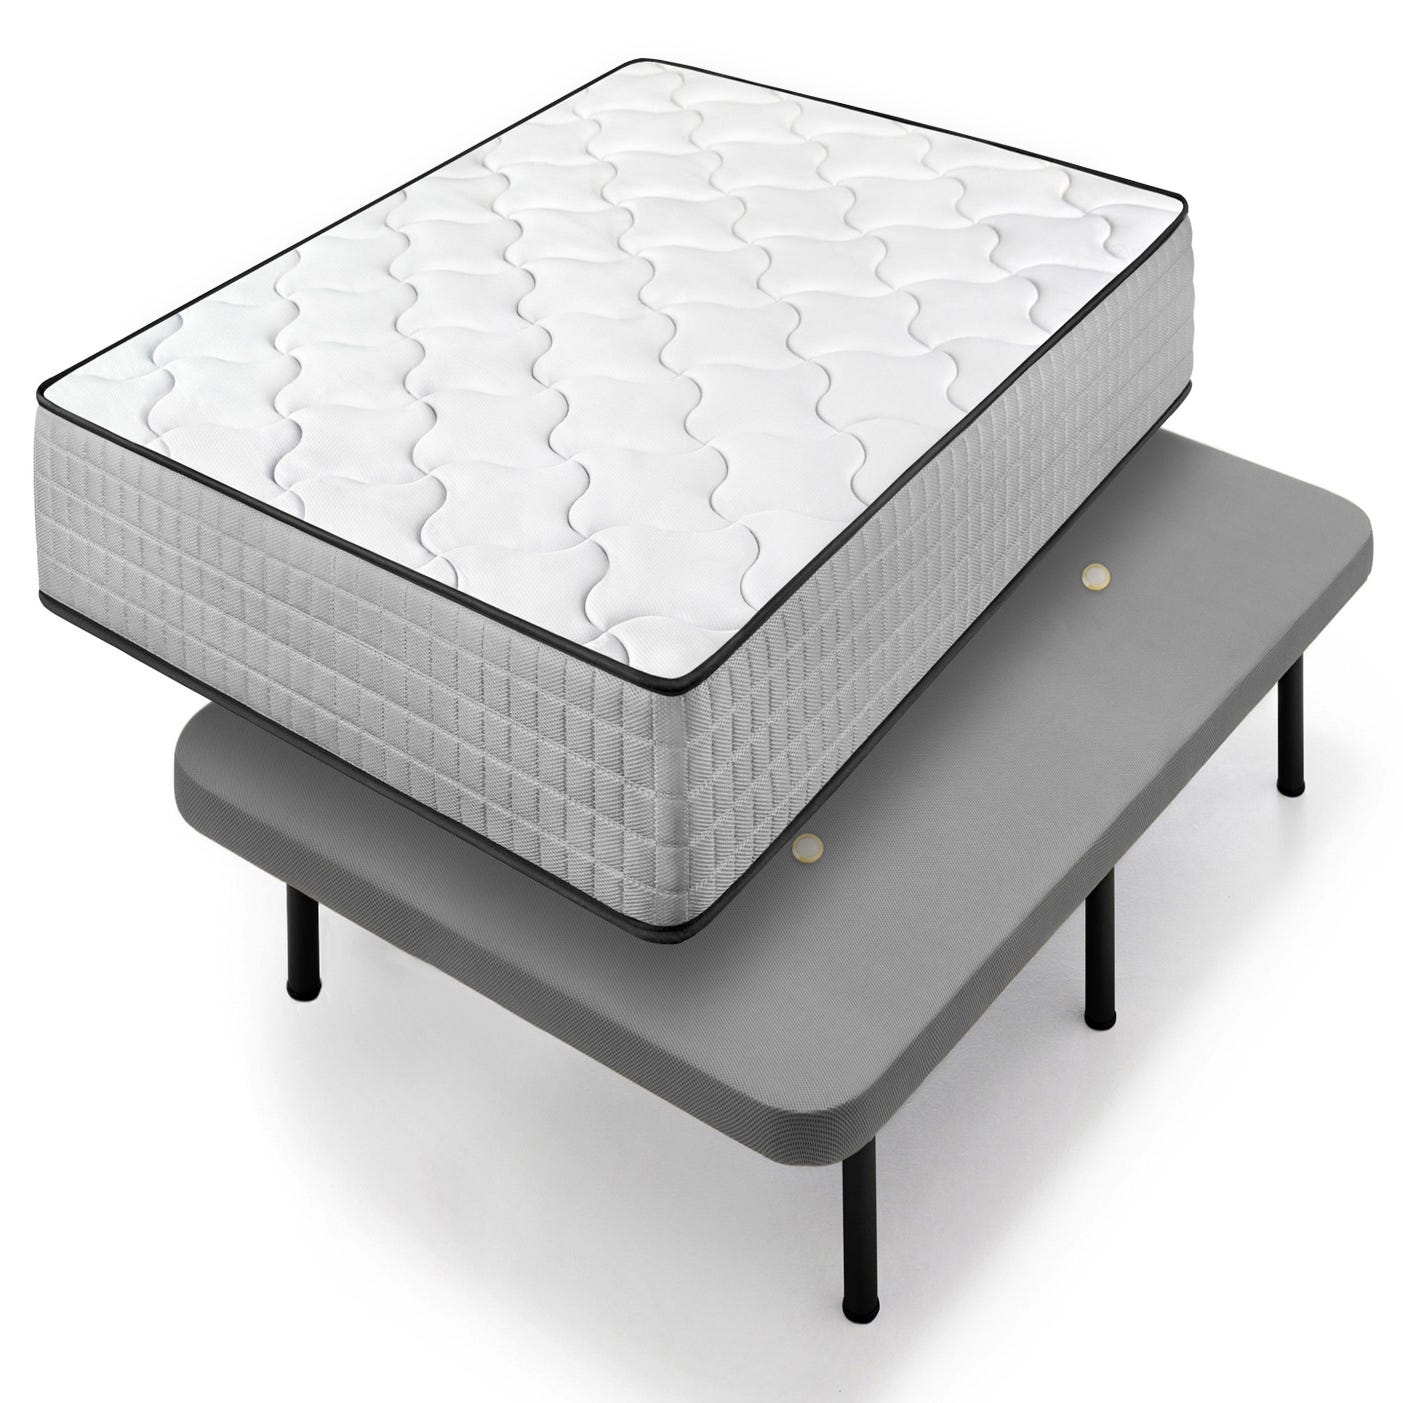 BRASÖY Base cama+6 patas, blanco, 150x190 cm - IKEA